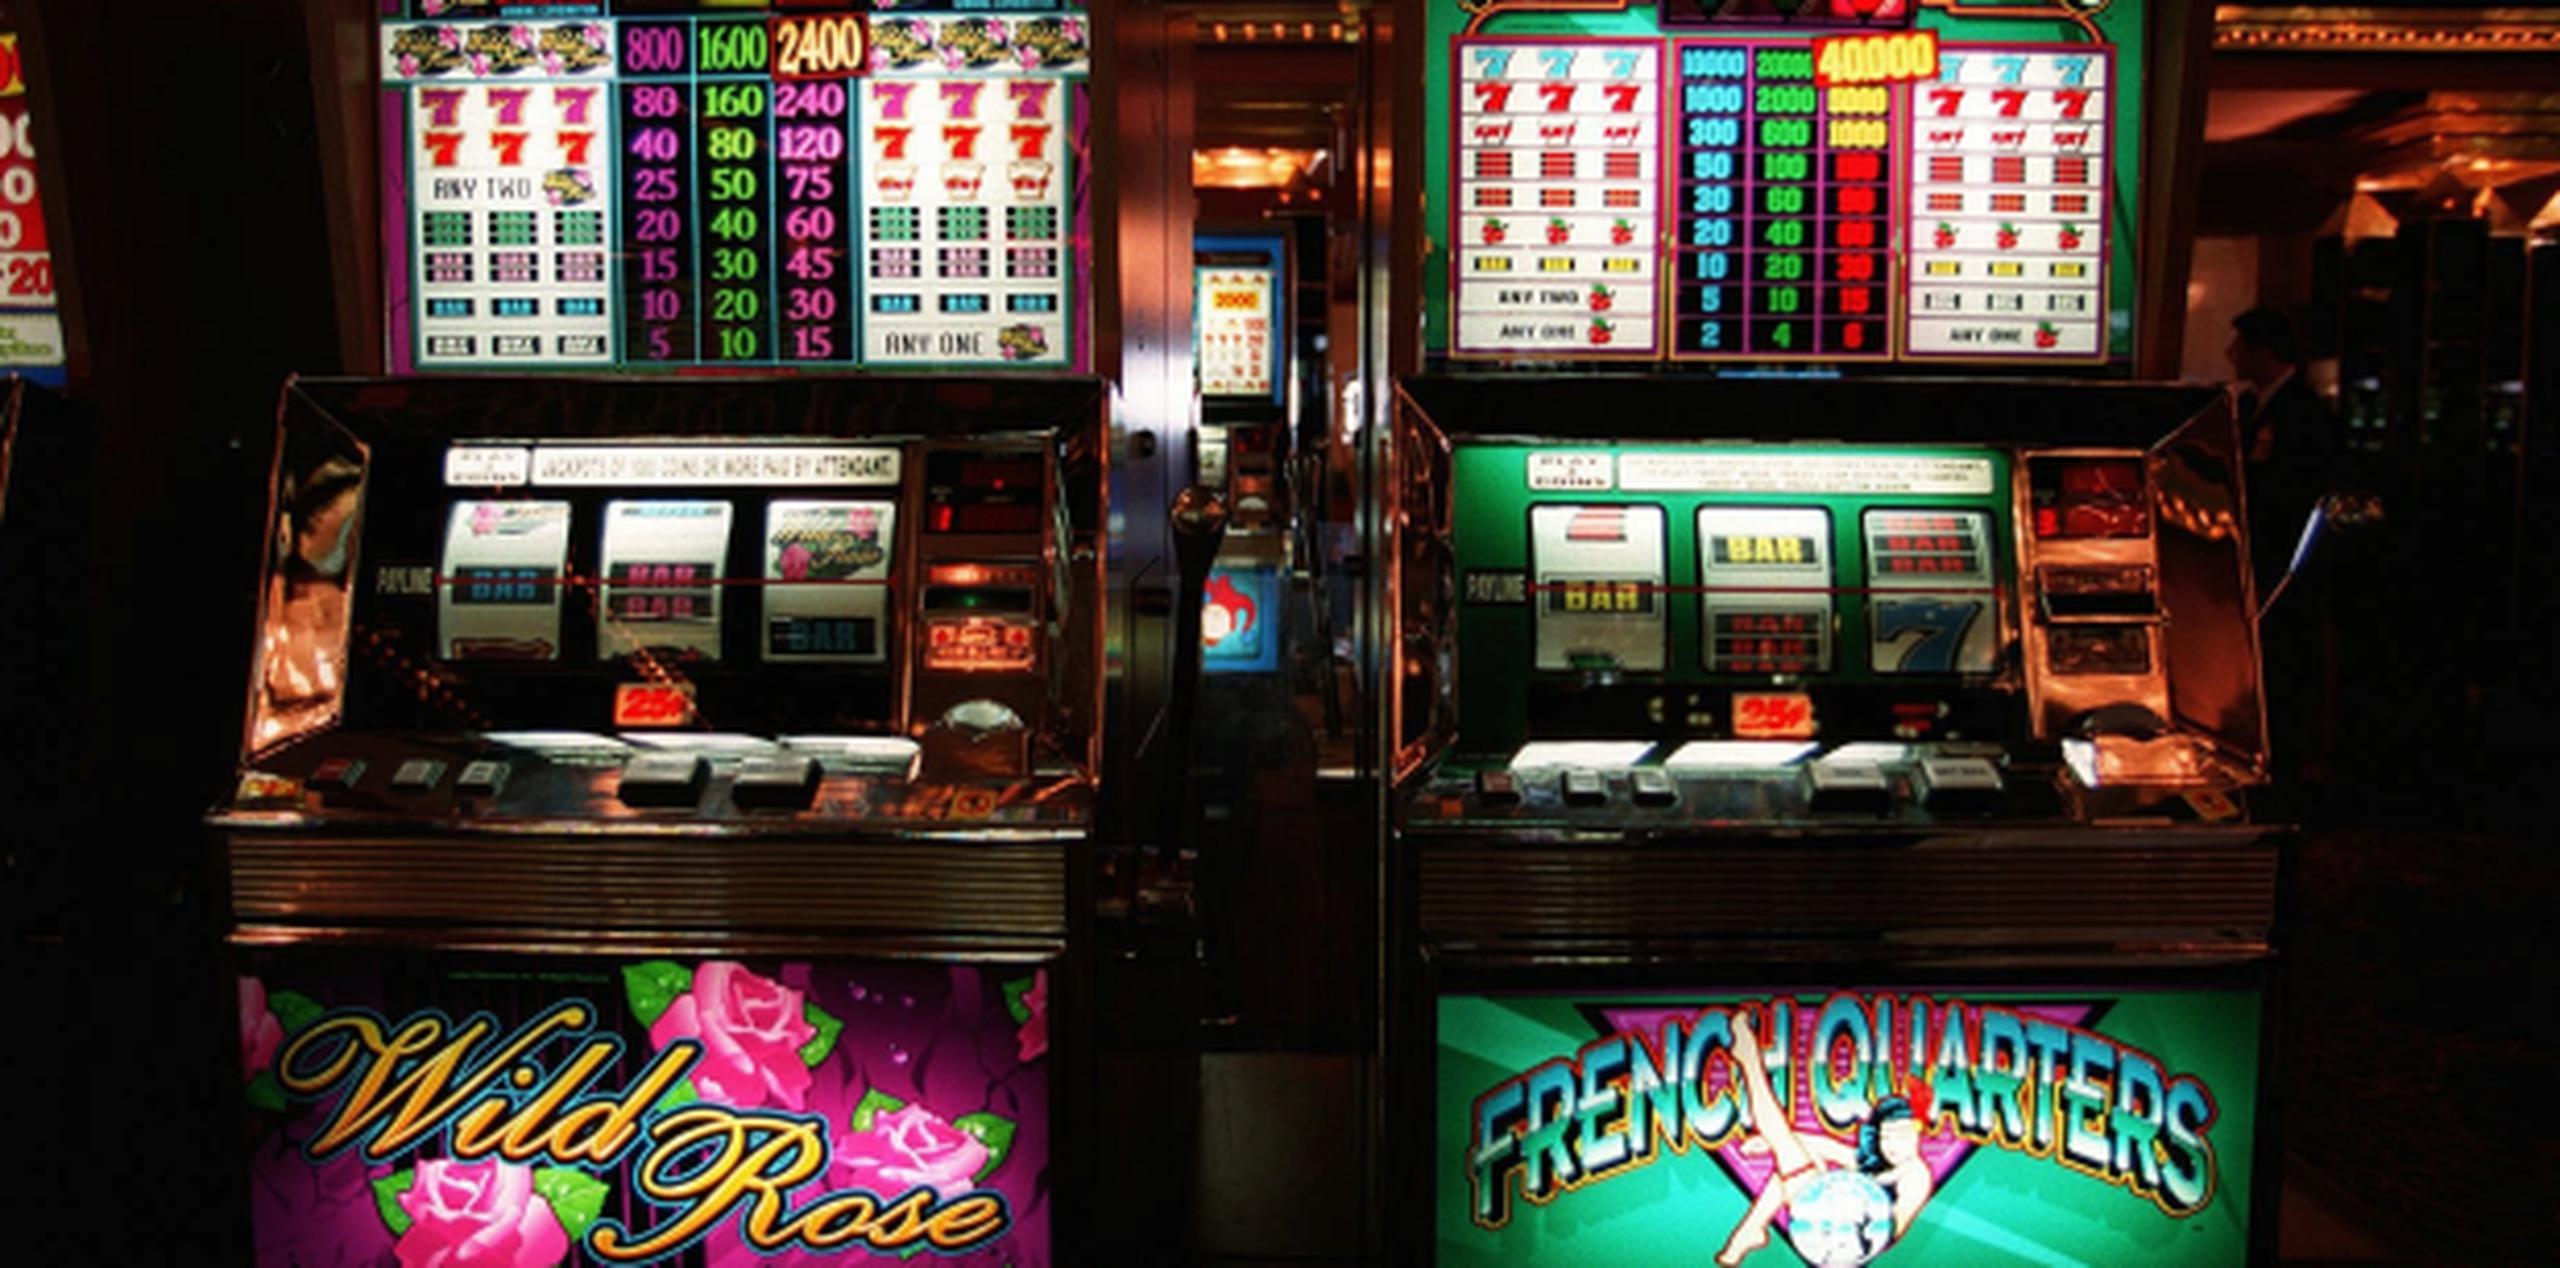 La UTIGPR “lleva mucho tiempo denunciando que la proliferación de máquinas tragamonedas fuera de los casinos ha afectado directamente a los empleados". (Archivo)